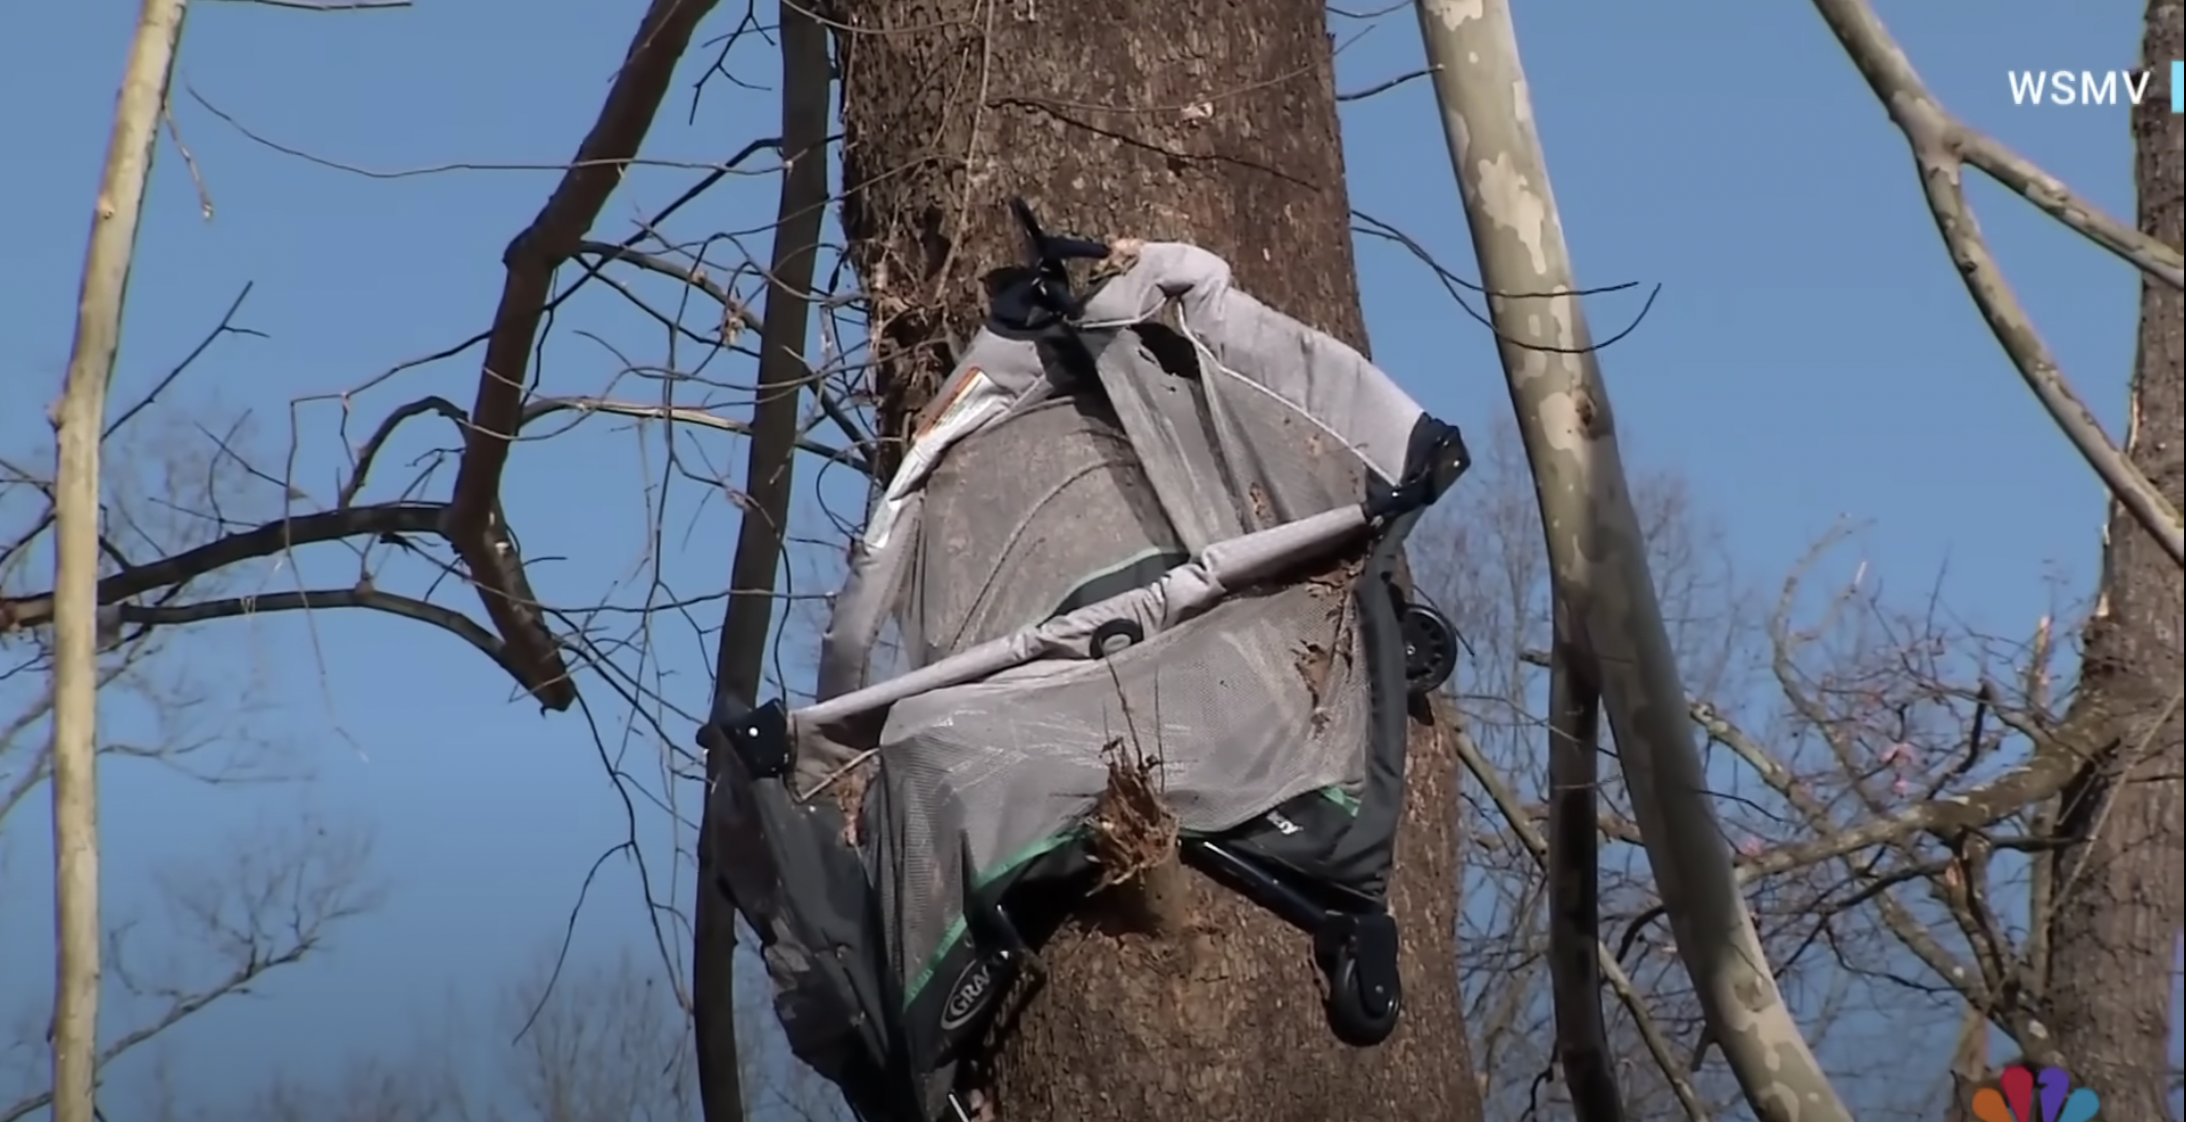 Couffin suspendu à un arbre, ressemblant à un berceau, vu dans une vidéo datée du 16 décembre 2023 | Source : youtube.com/NBC News